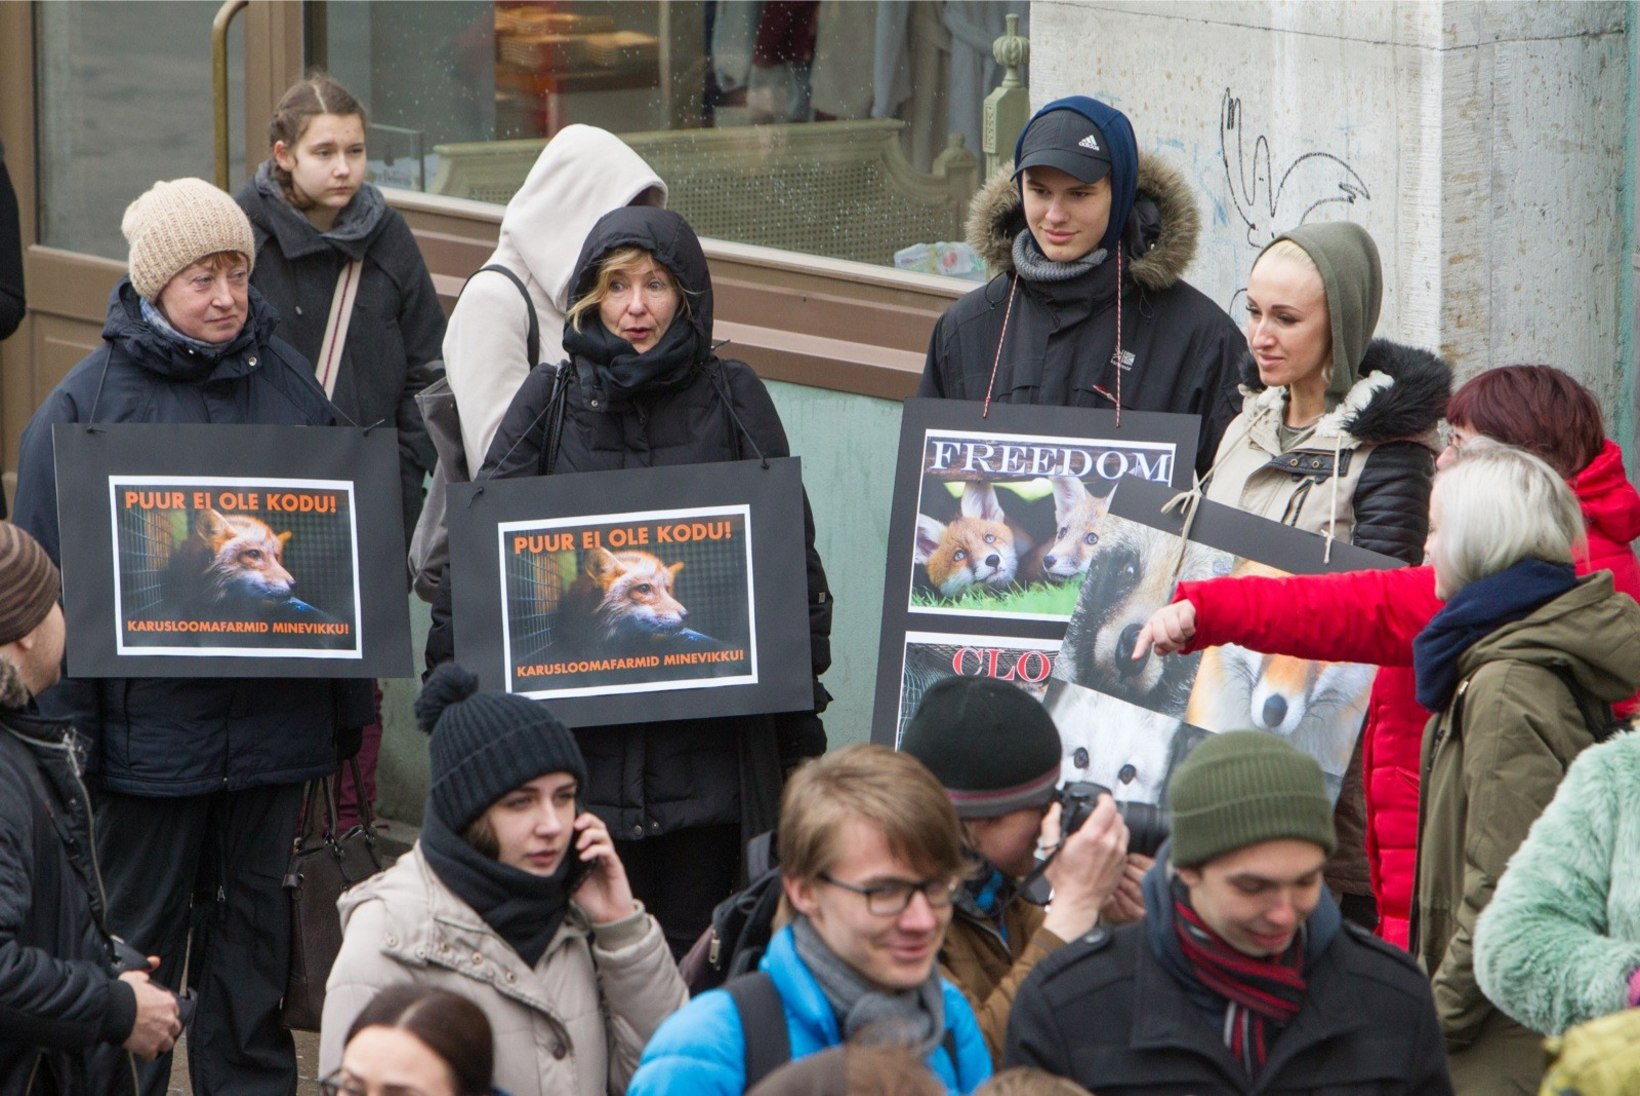 GALERII | Loomakaitsjad marssisid Tallinna vanalinnas karusloomafarmide vastu